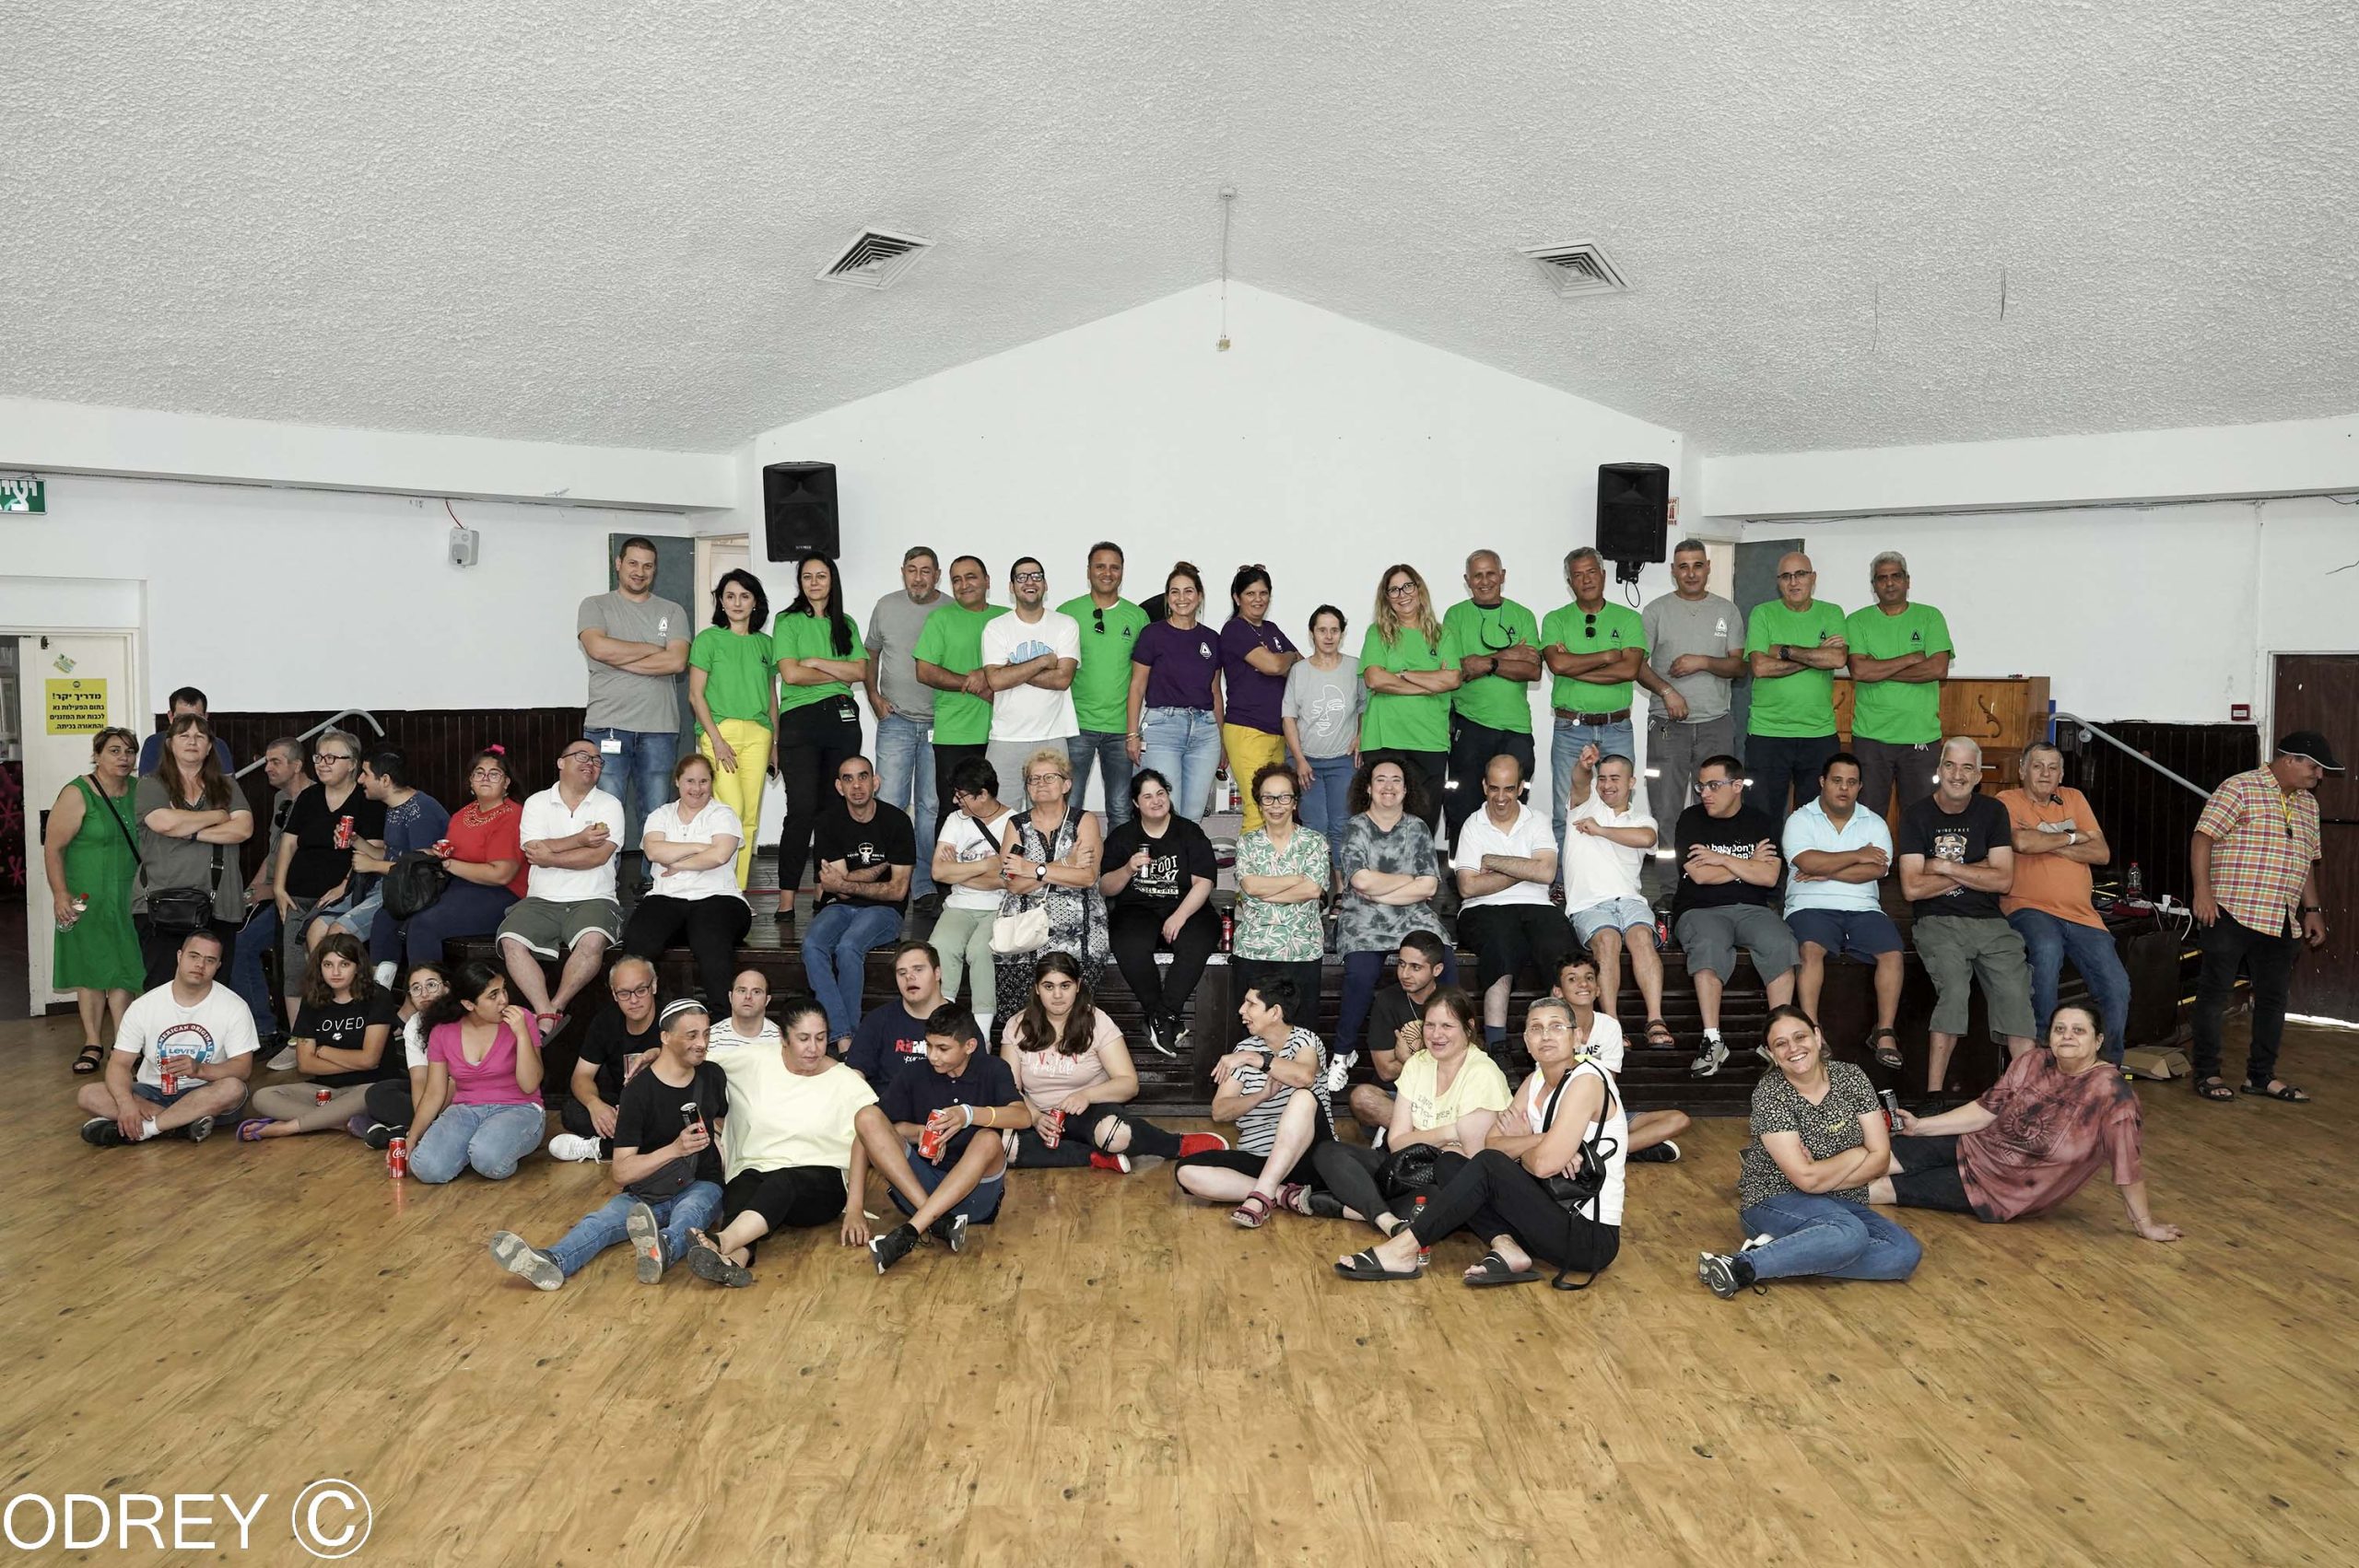 חוגגים את המגוון: אקי"ם אשדוד ועובדי חברת אדמה אגן שרו, רקדו וחגגו יחד באירוע סיום שנה